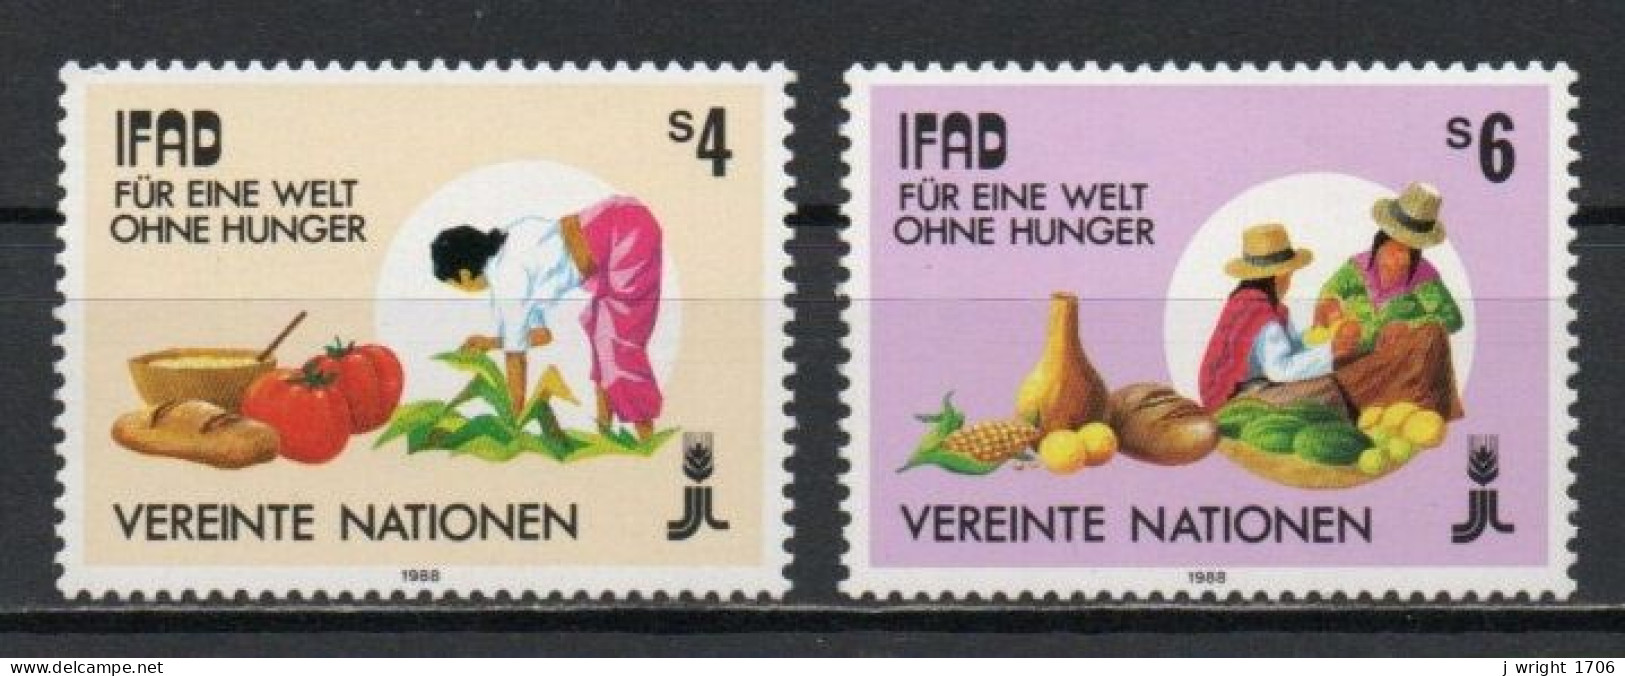 UN/Vienna, 1988, IFAD, Set, MNH - Neufs